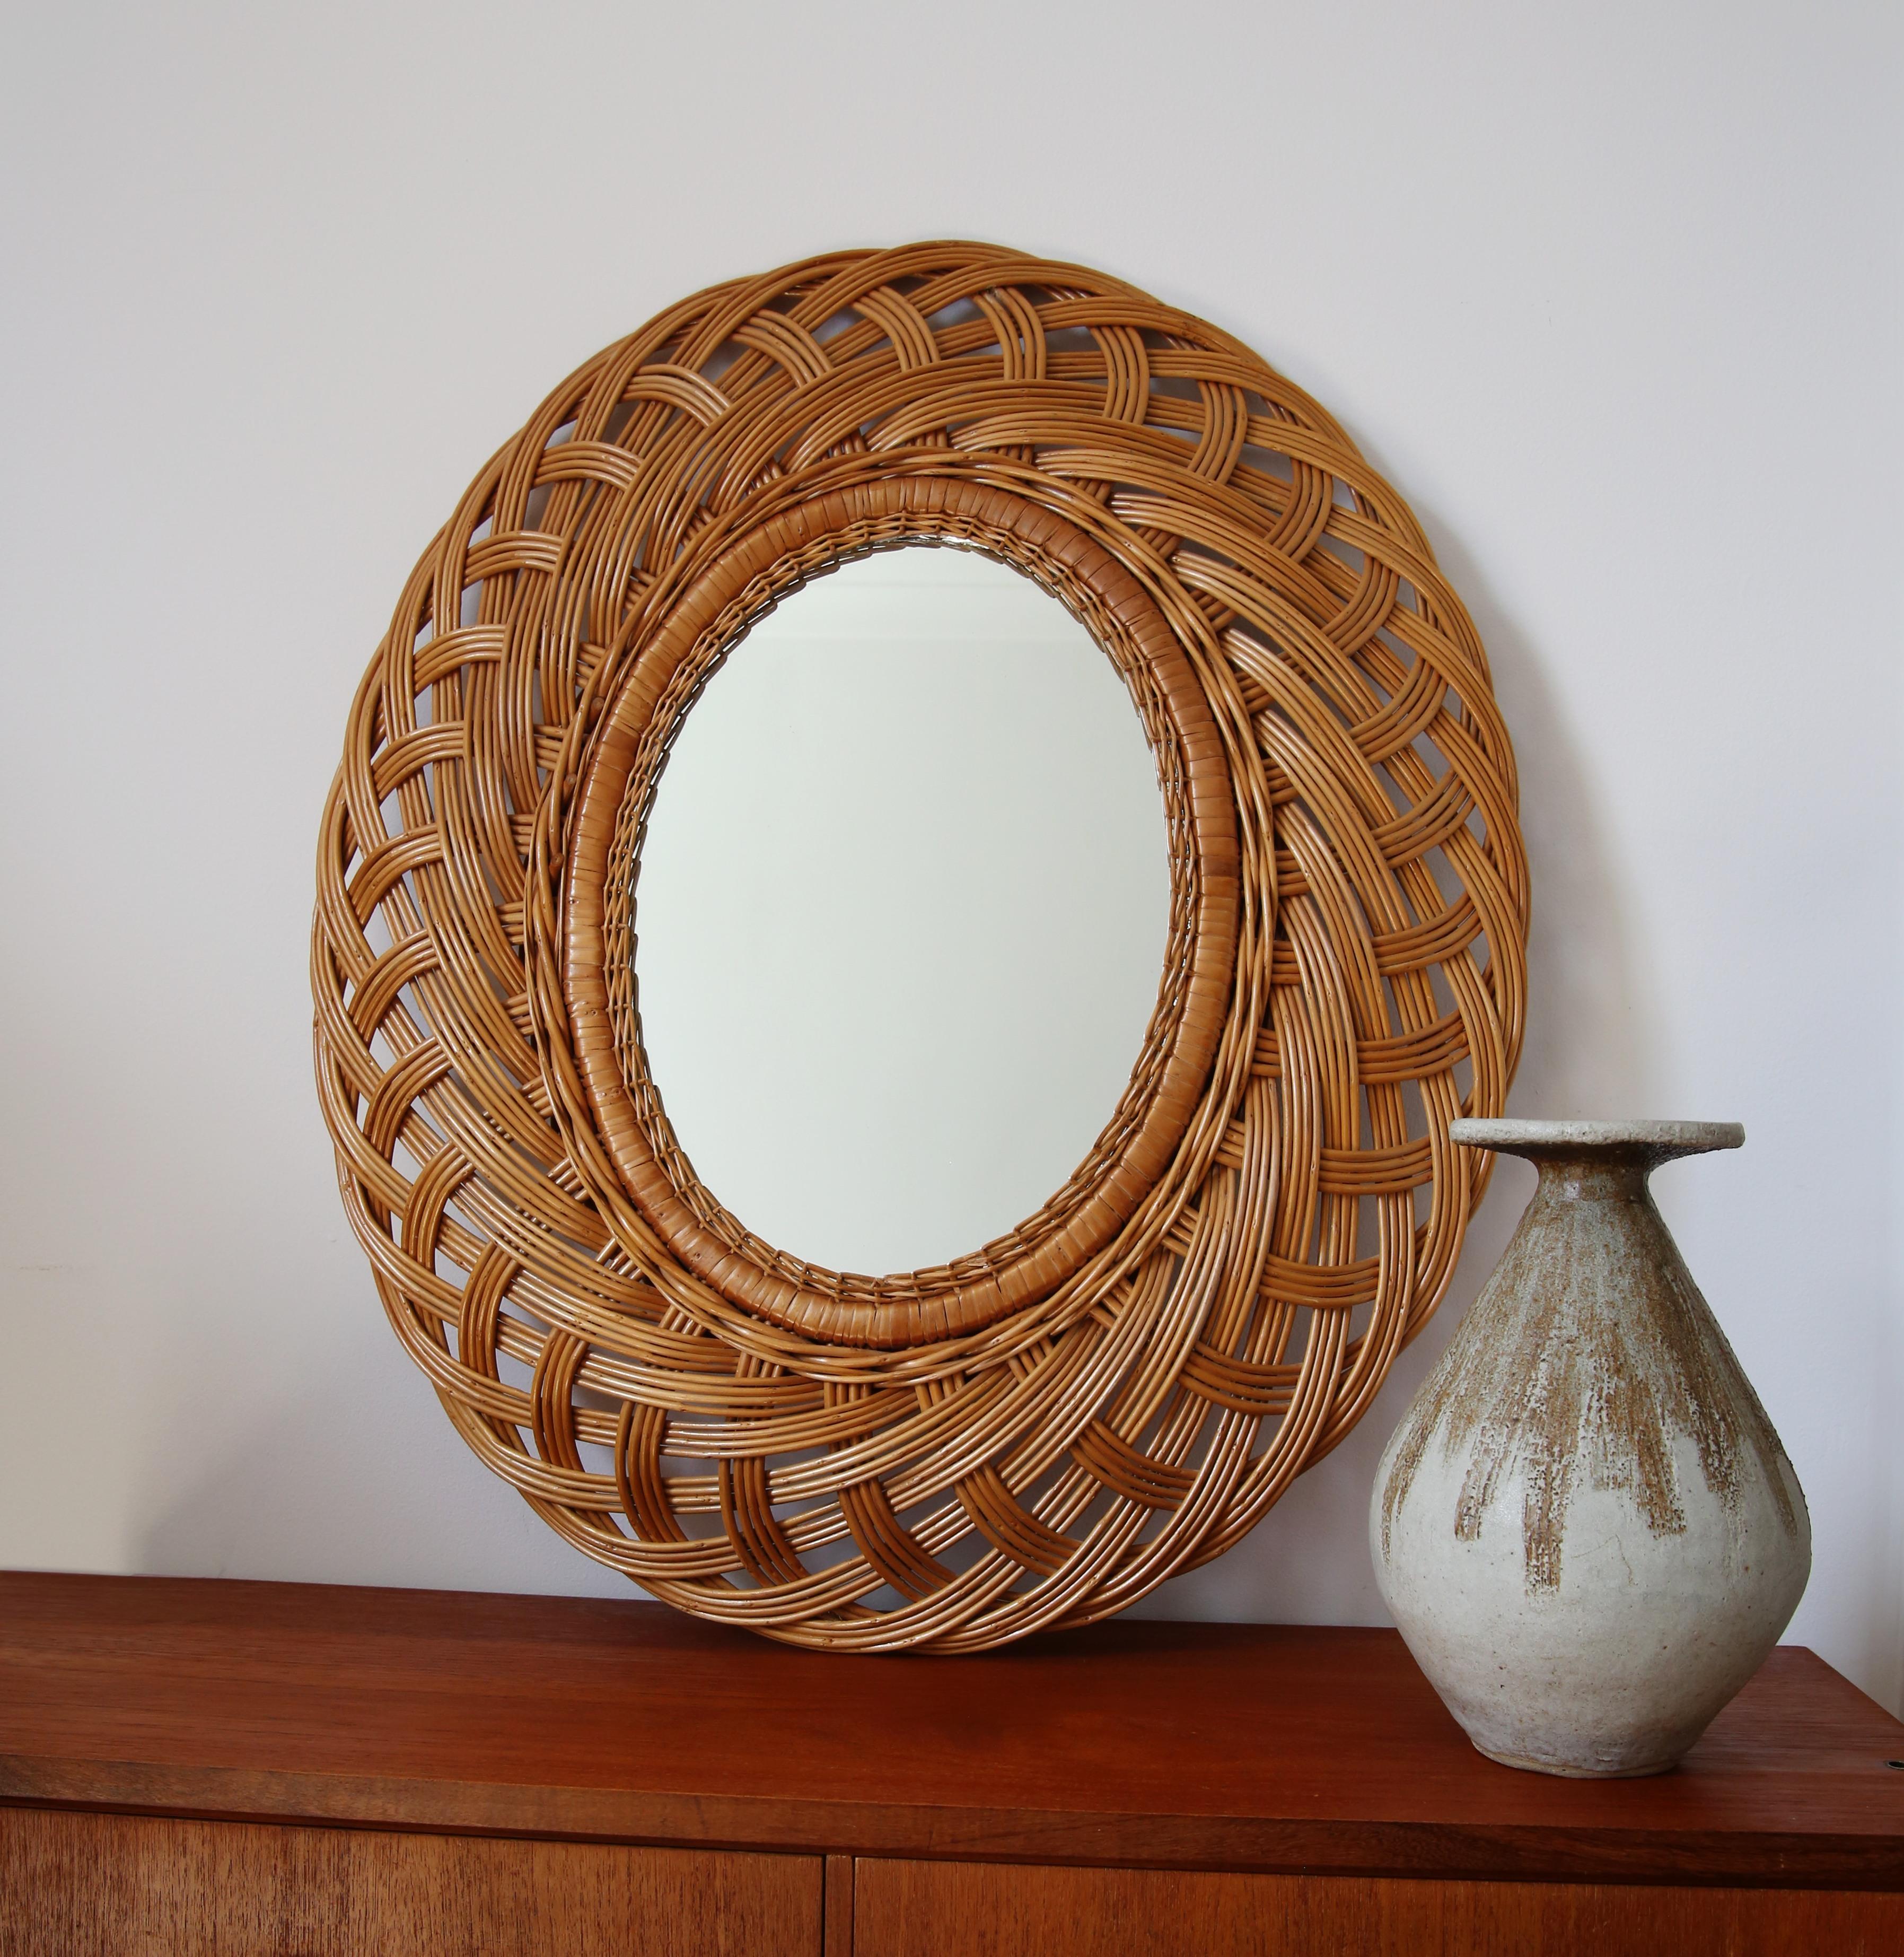 Schöner ovaler Spiegel aus Weidengeflecht aus der schwedischen Mid-Century-Ära mit einem breiten, organisch geflochtenen Weidenrahmen in einem warmen, kräftigen Material

Das Geflecht des Rahmens ist zart und hat ein tiefes, fließendes,